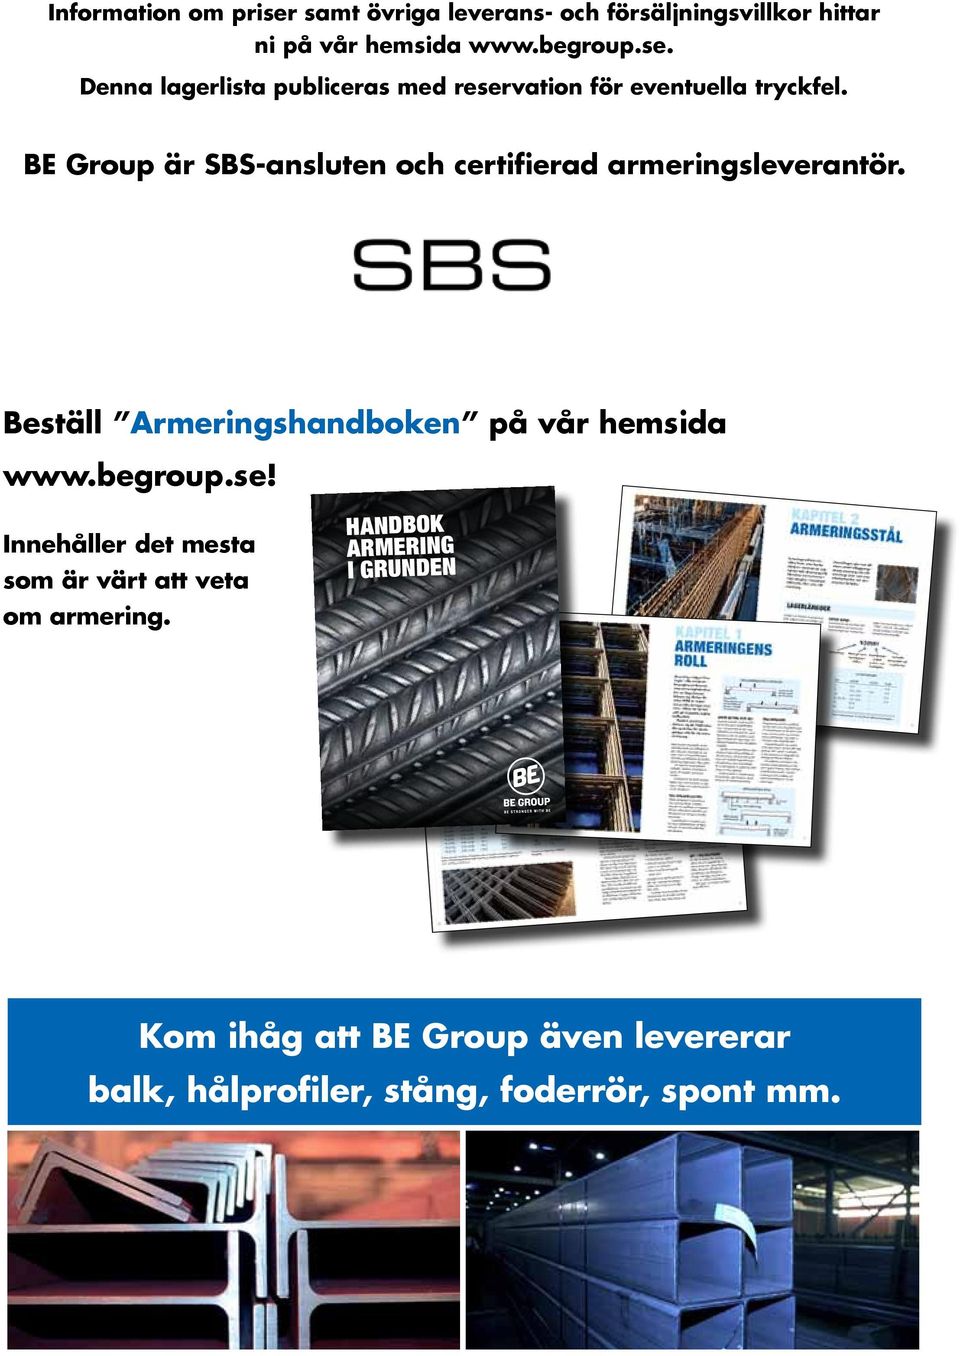 BE Group är SBS-ansluten och certifierad armeringsleverantör. Beställ Armeringshandboken på vår hemsida www.begroup.se!